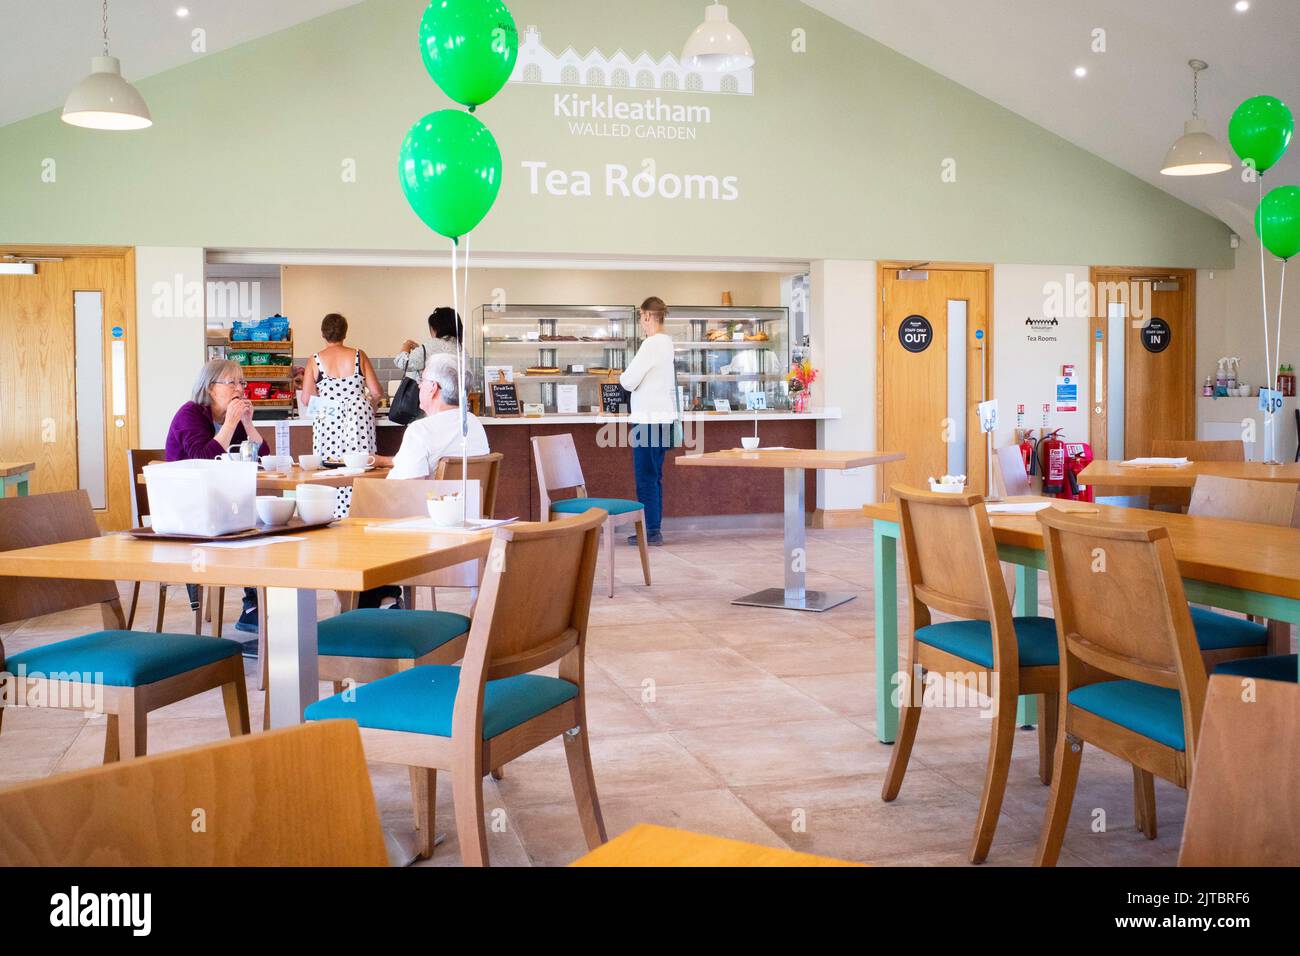 Sala da tè Kirkleatham con balloni verdi per celebrare il 1st° anniversario della prima apertura Foto Stock